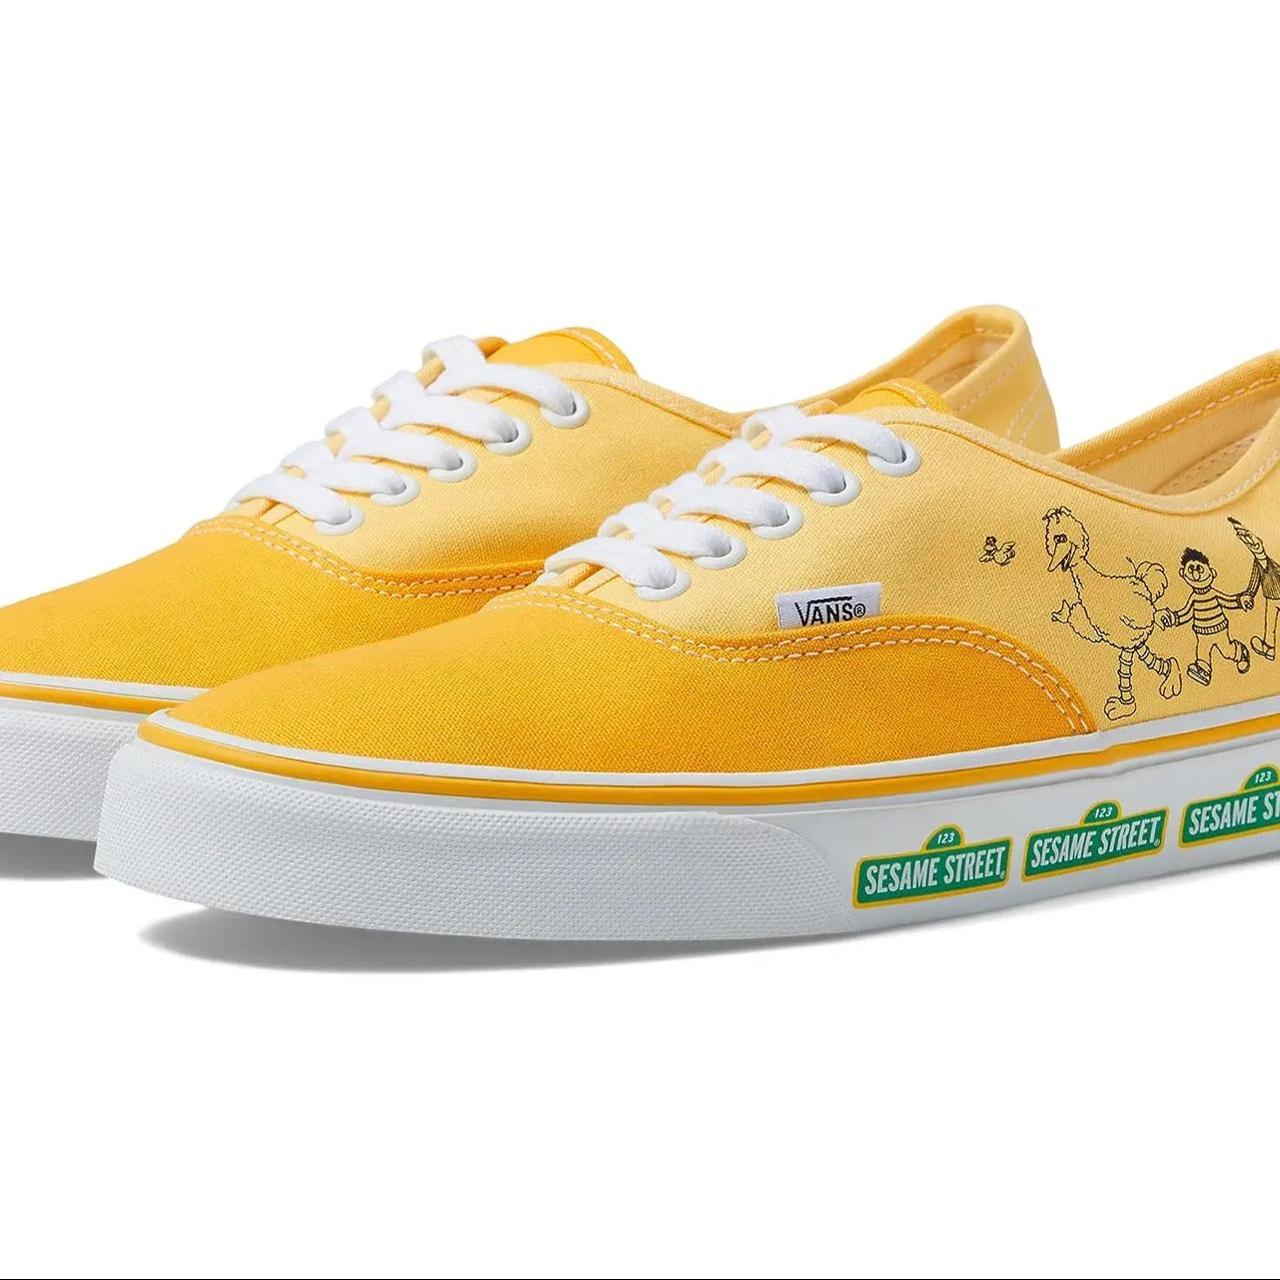 Vans Women's Sneakers - Yellow - US 8